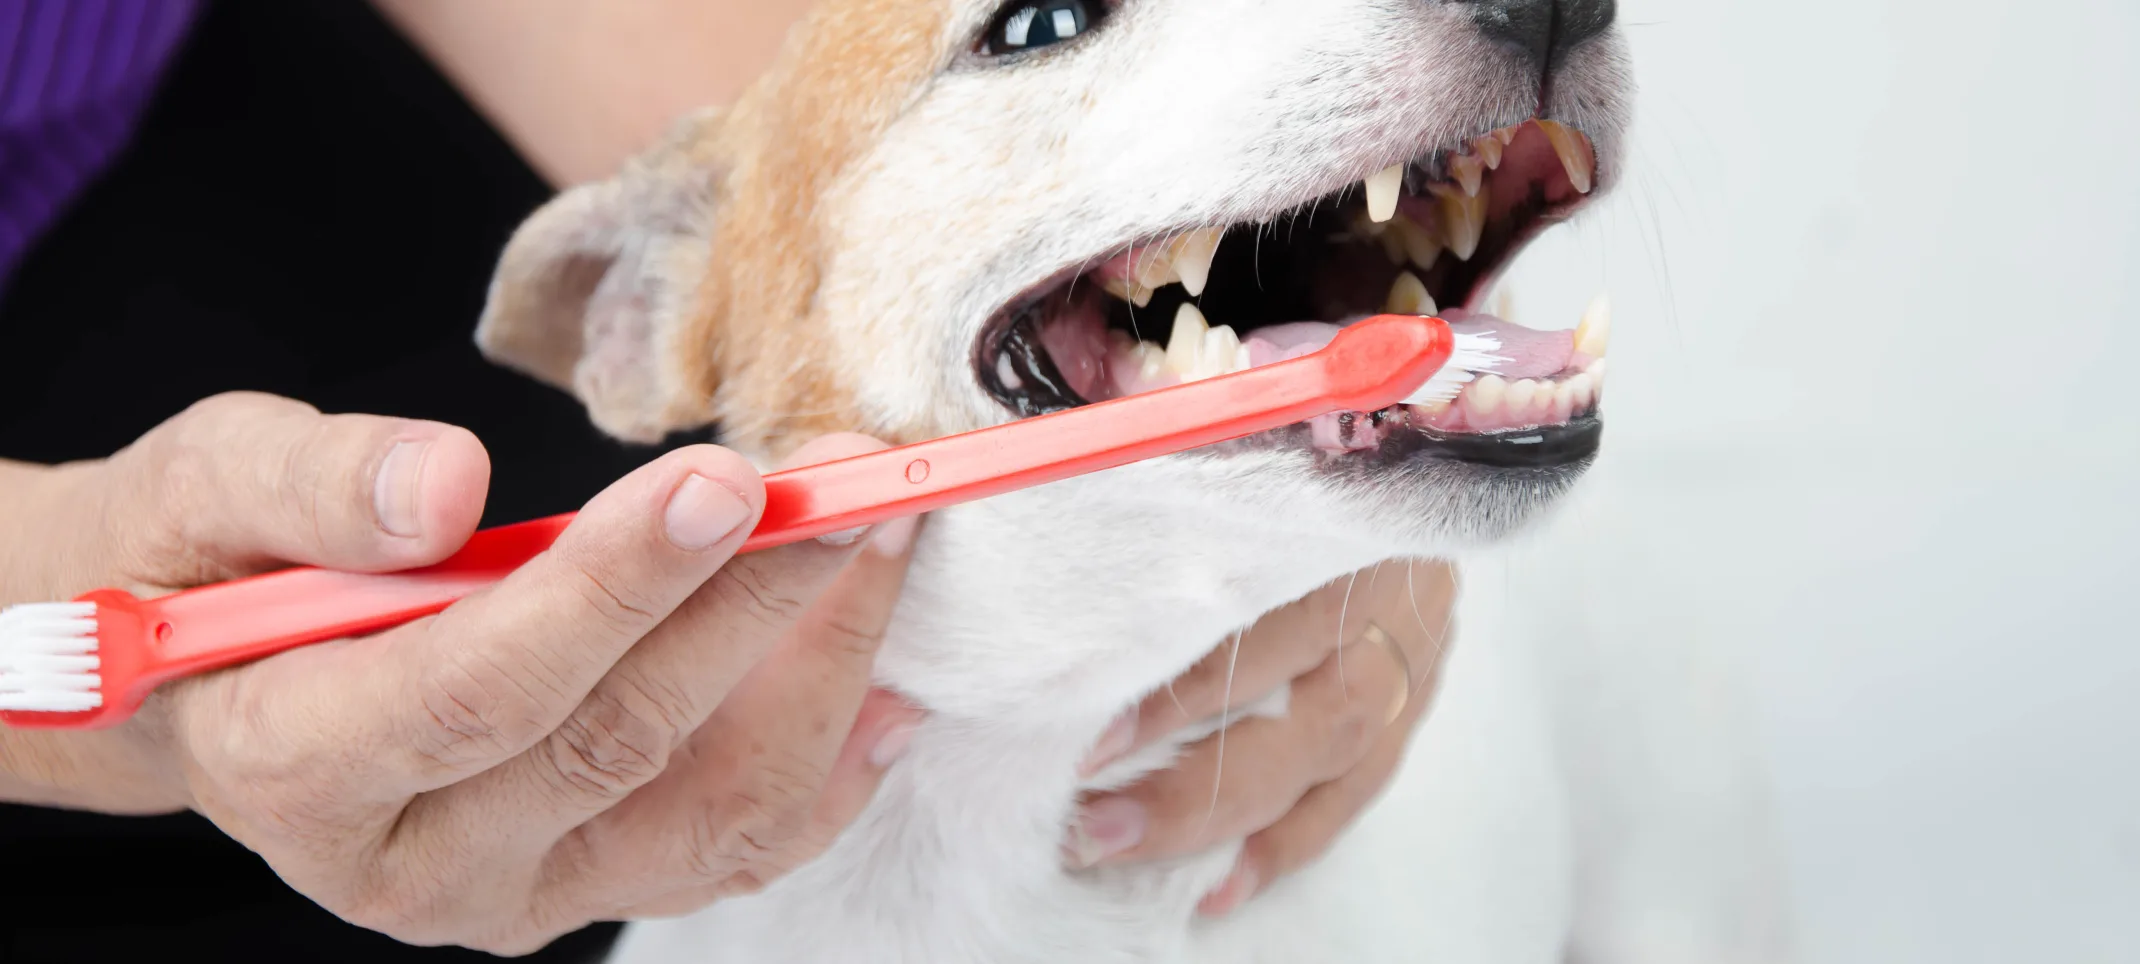 Dog having its teeth brushed